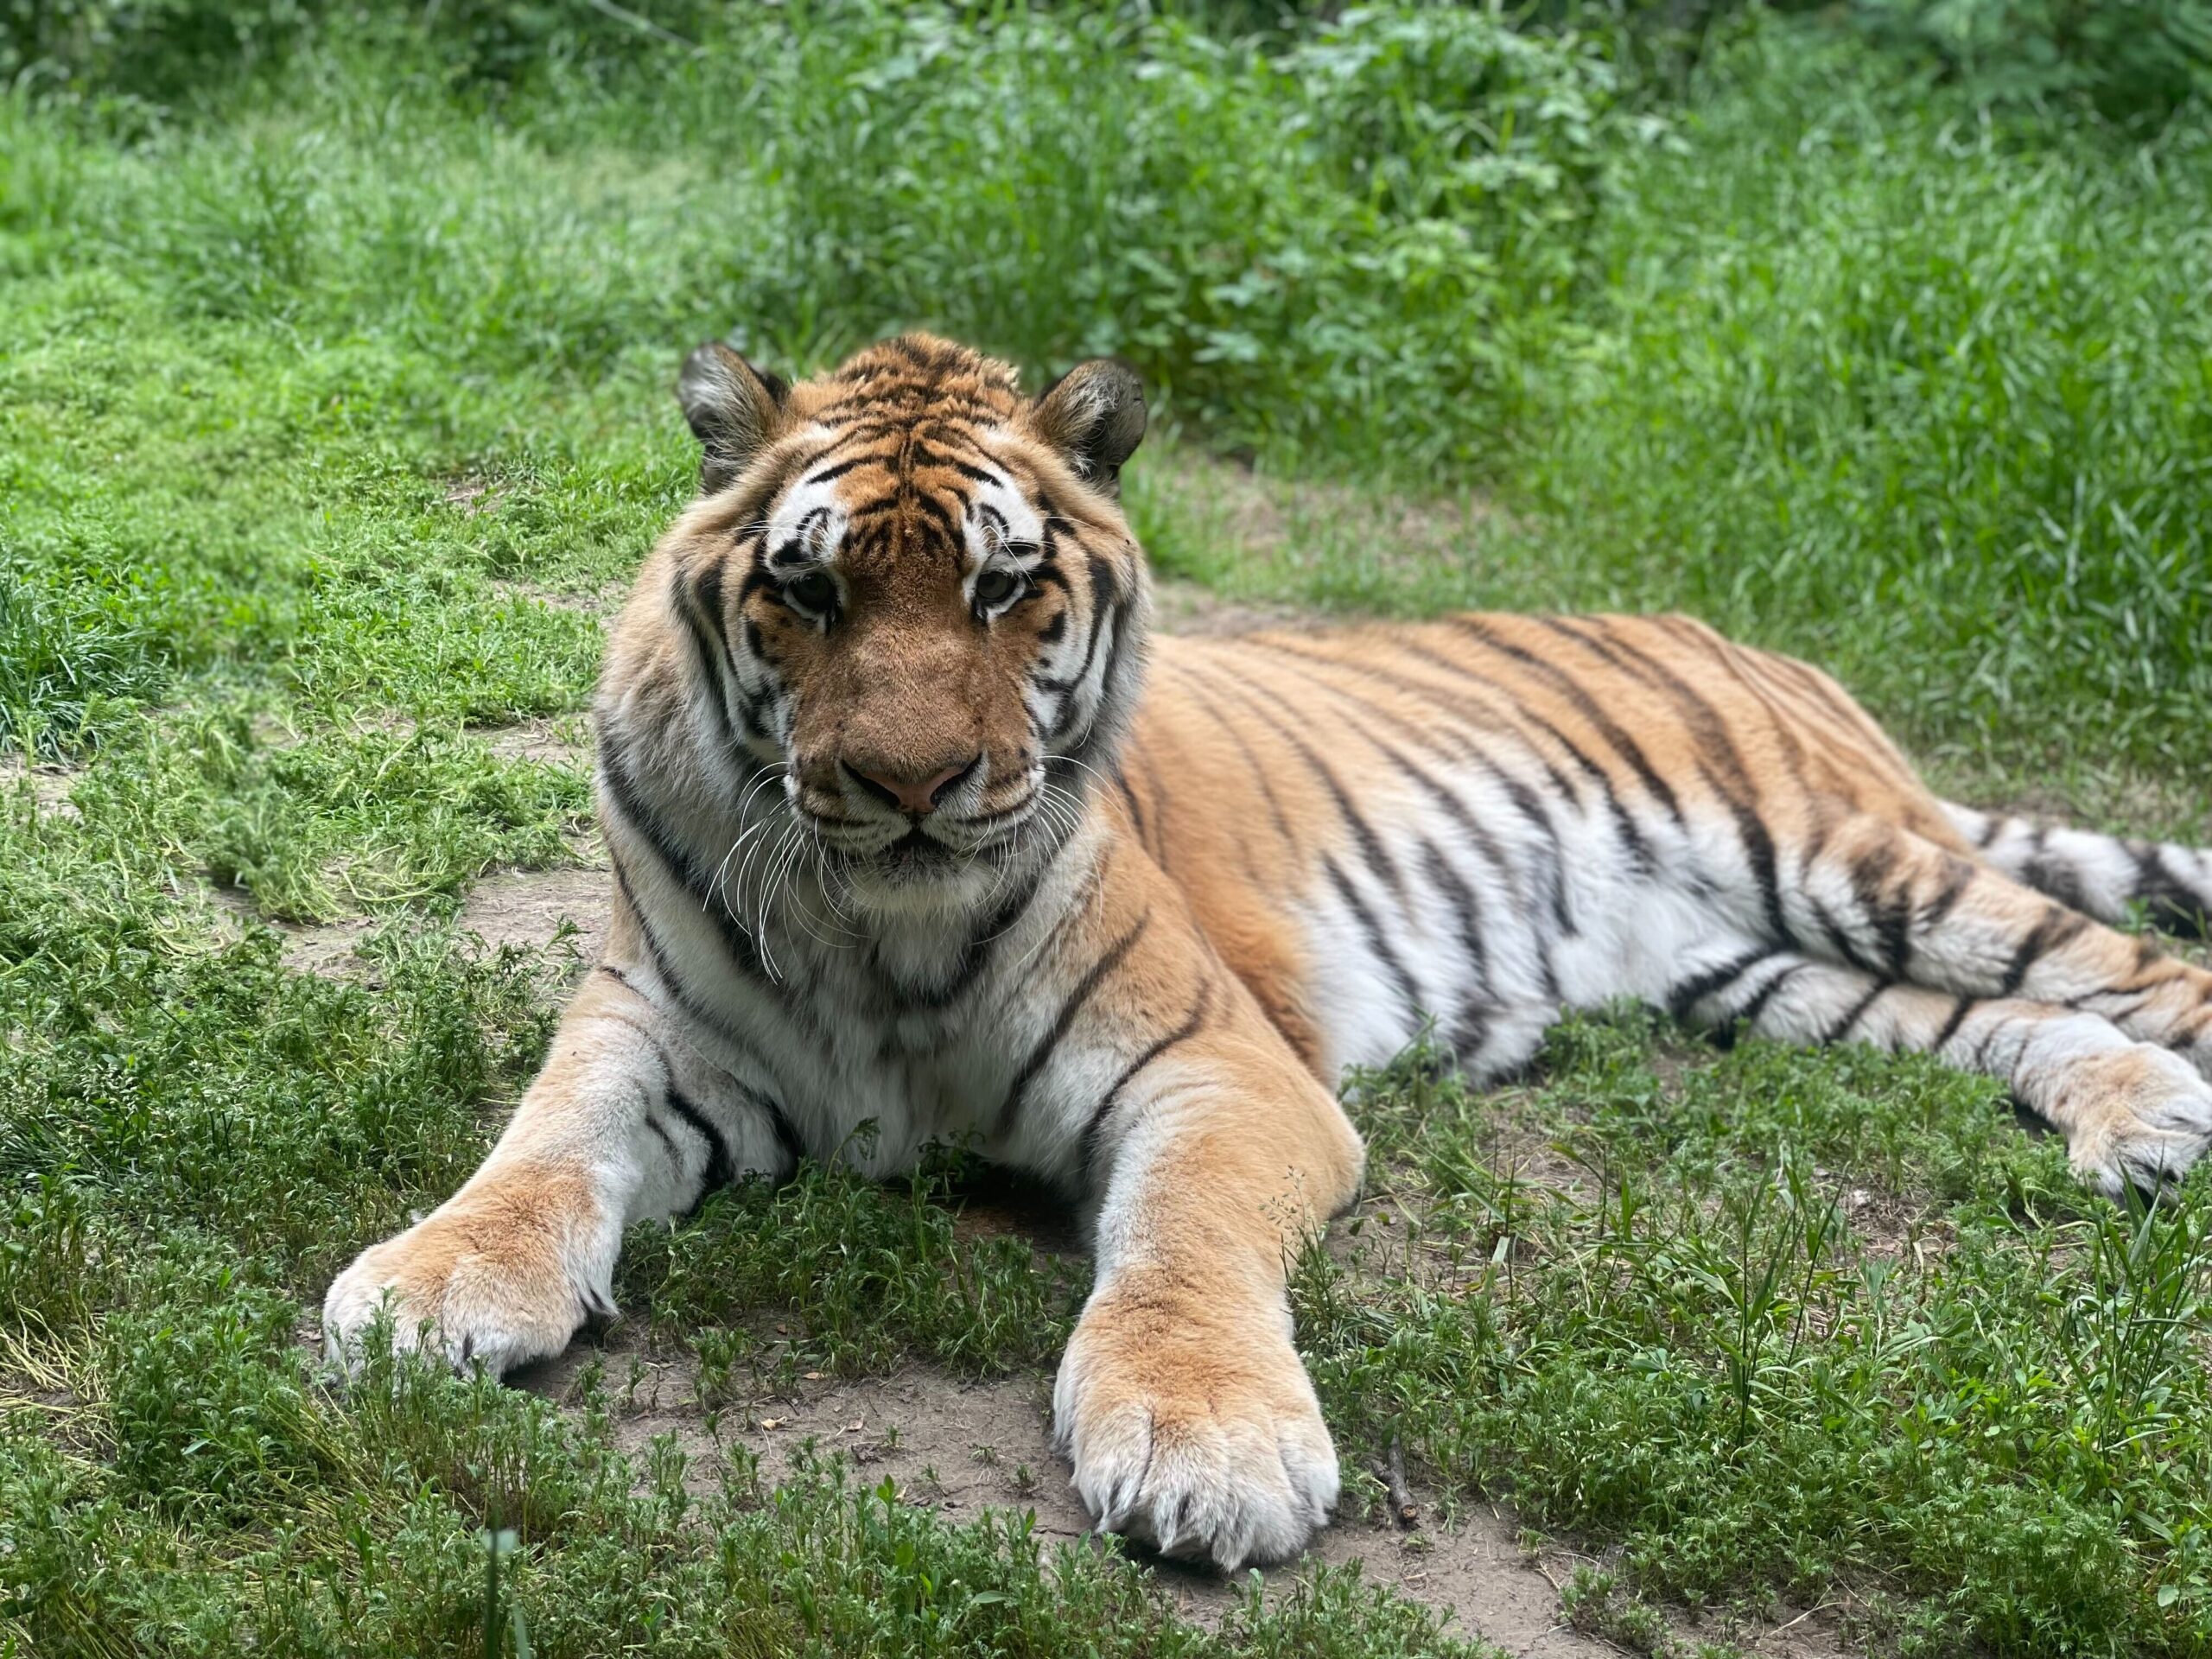 A tiger at the Alaska Zoo